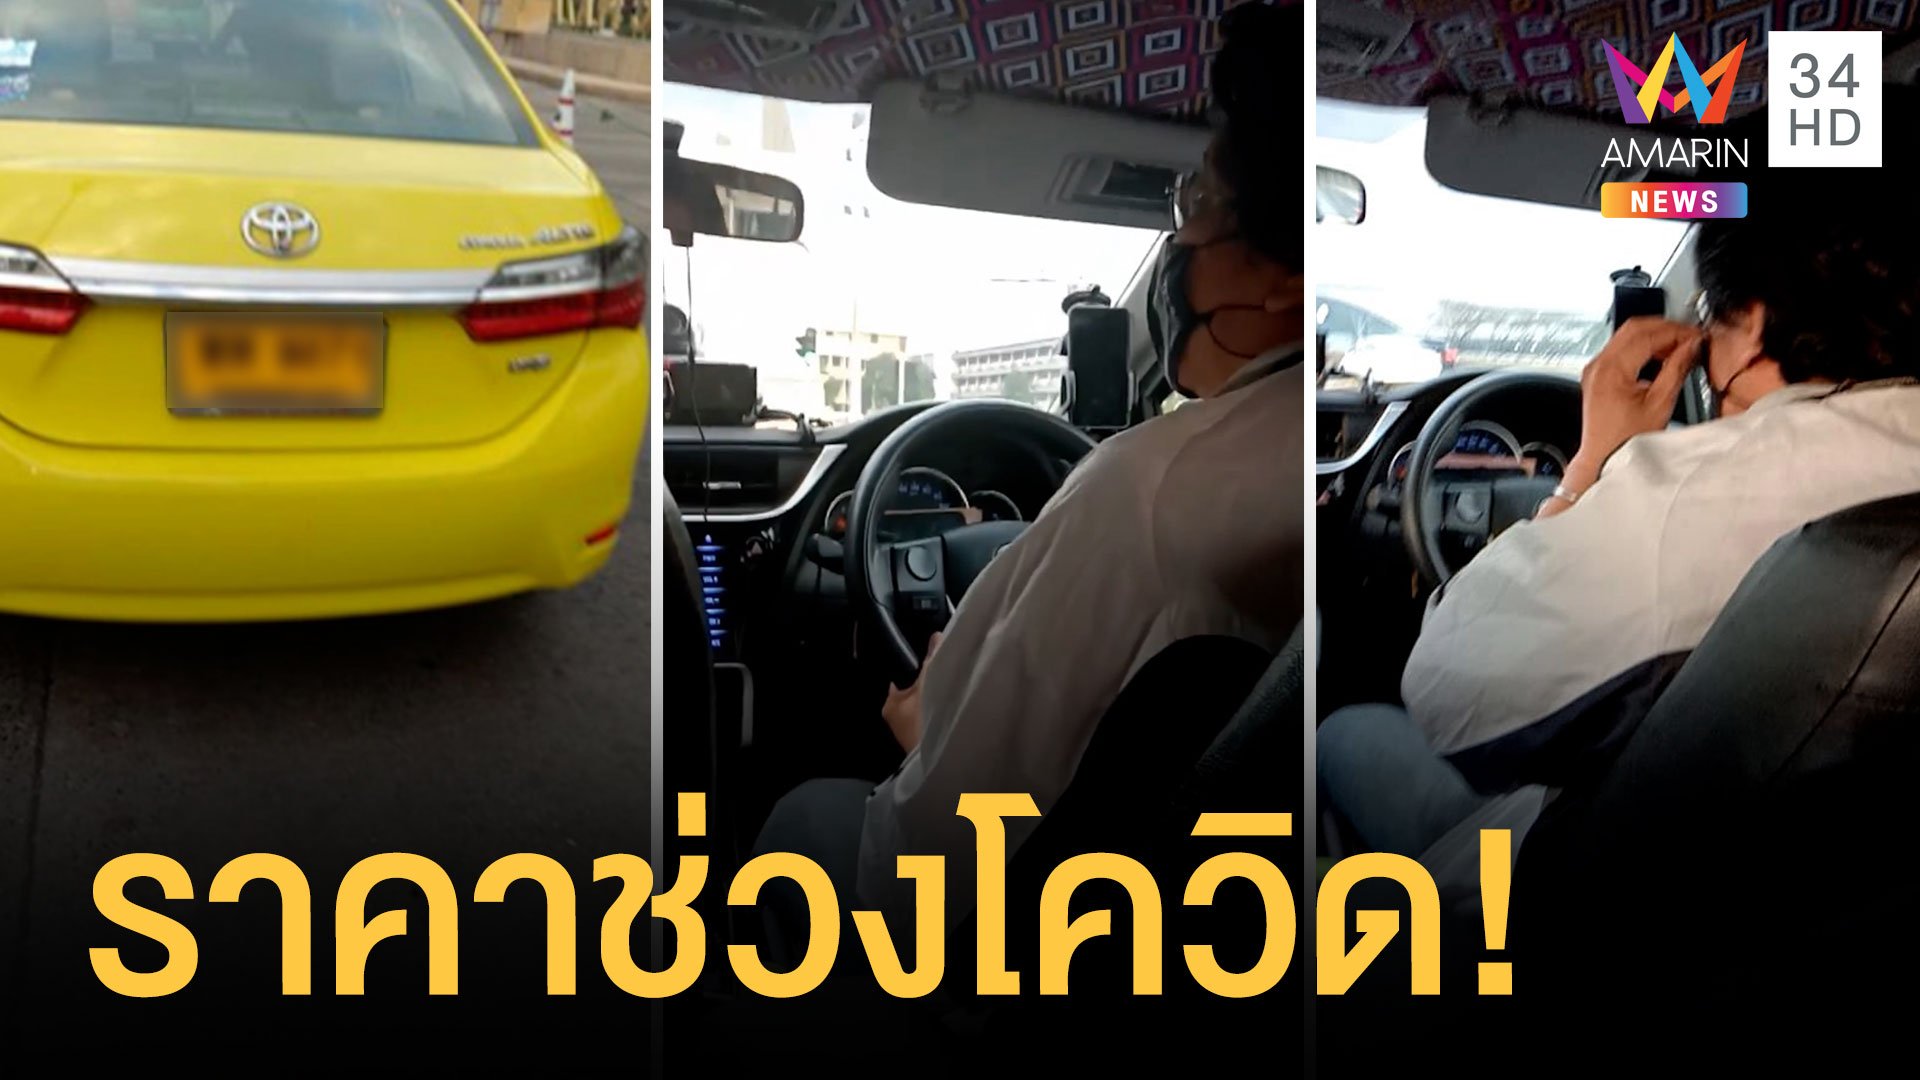 สาวพ้นกักตัวเรียกแท็กซี่ไปสายใต้ใหม่ ไม่กดมิเตอร์เหมา 800 บาท | ข่าวอรุณอมรินทร์ | 25 ธ.ค. 63 | AMARIN TVHD34